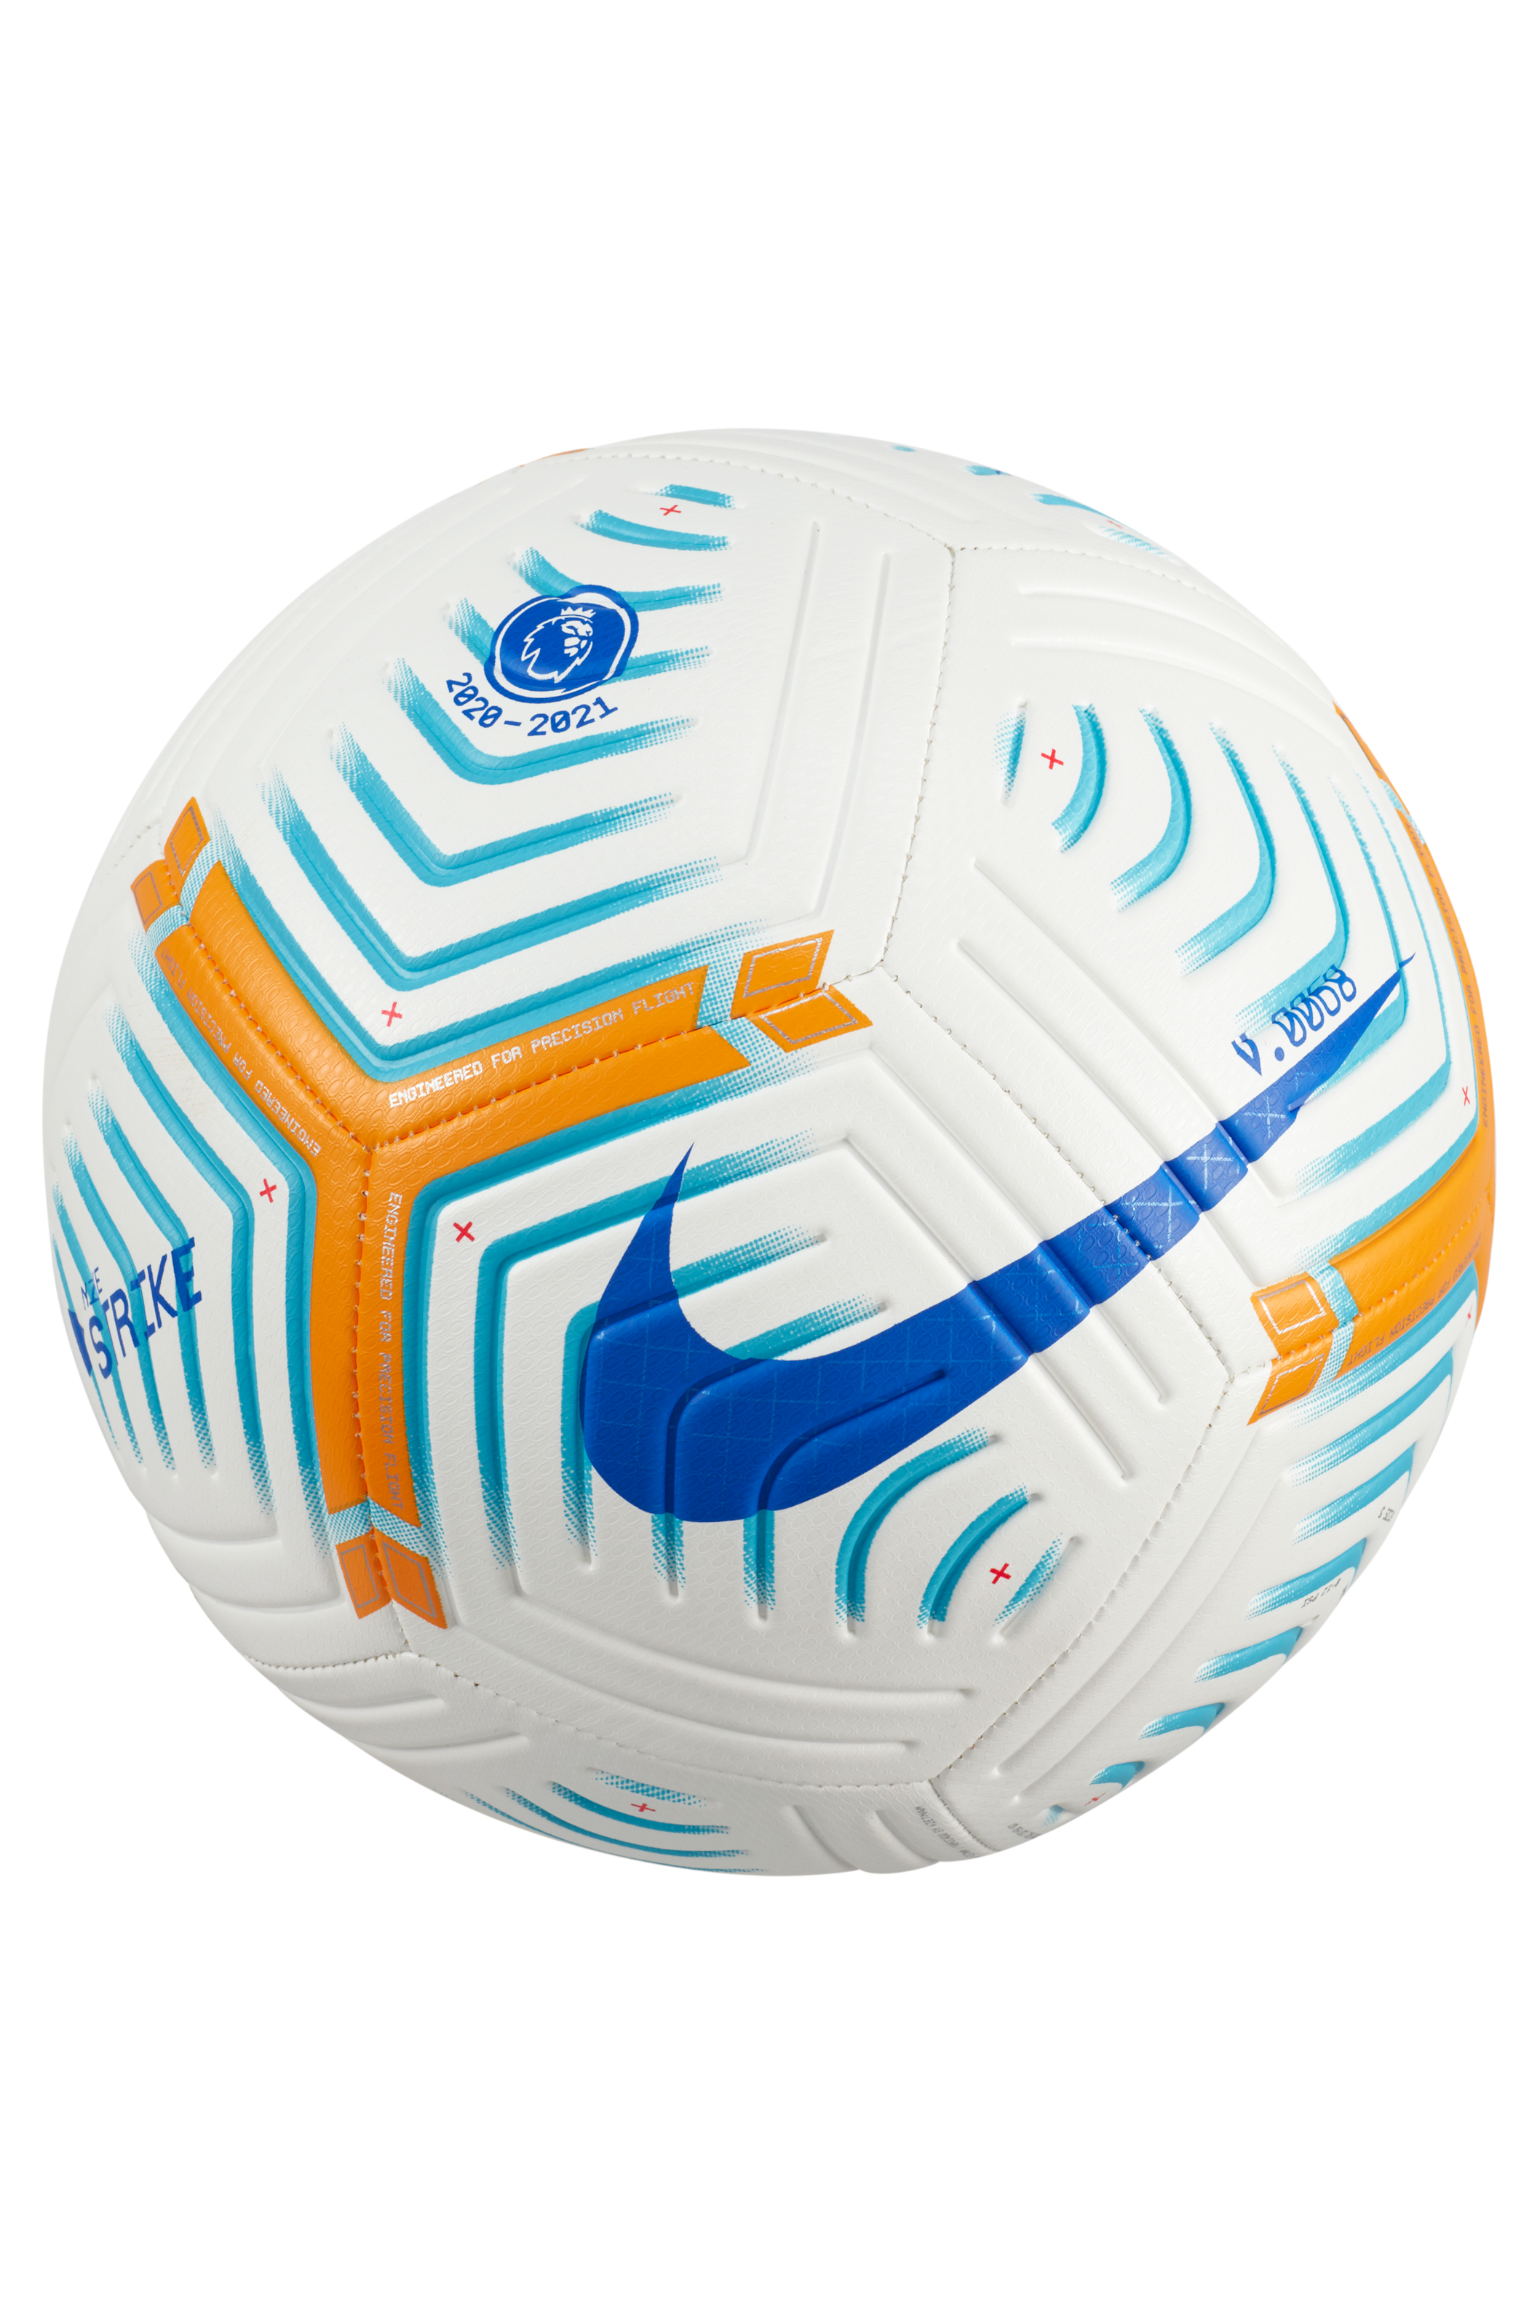 premier league ball 2020 size 5